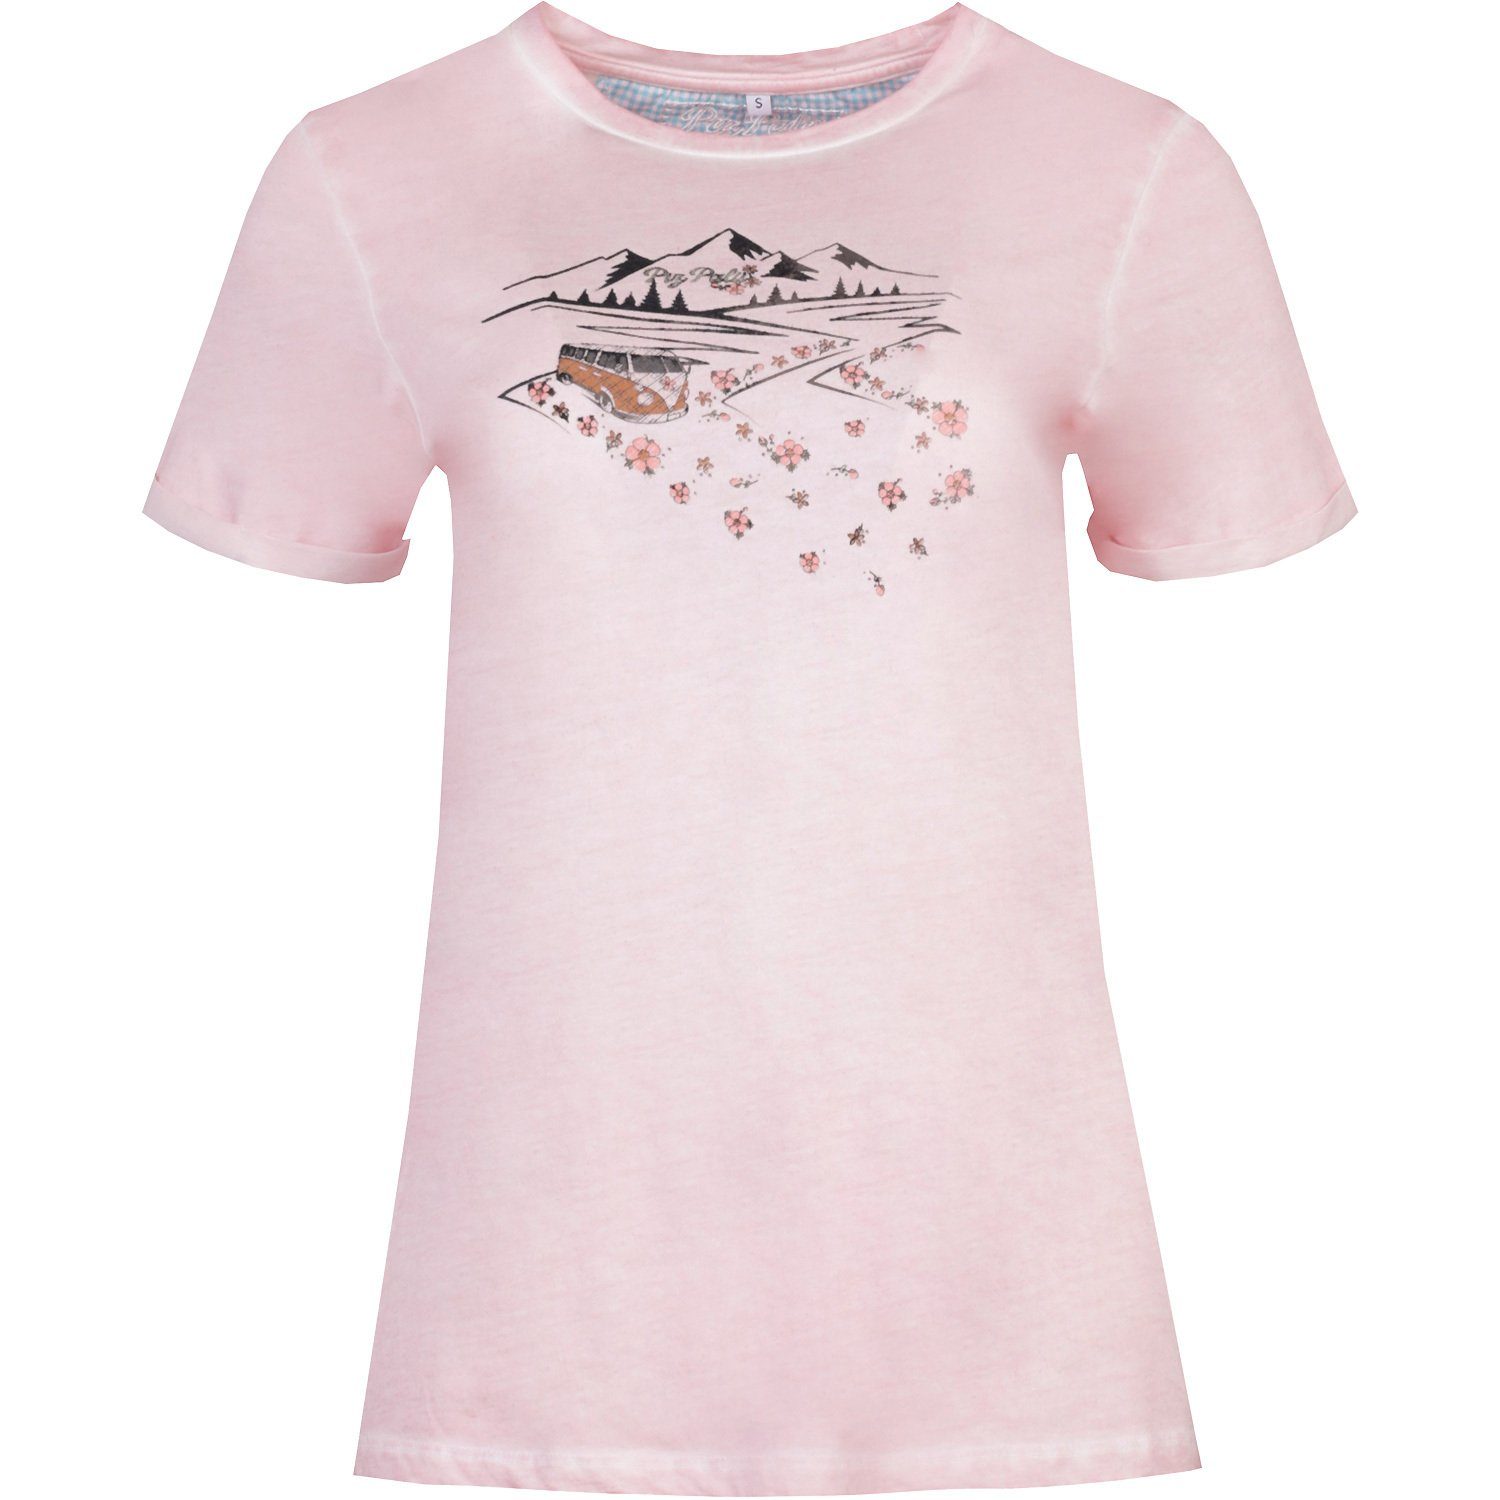 Palü Marktbergel T-Shirt Piz Rose T-Shirt